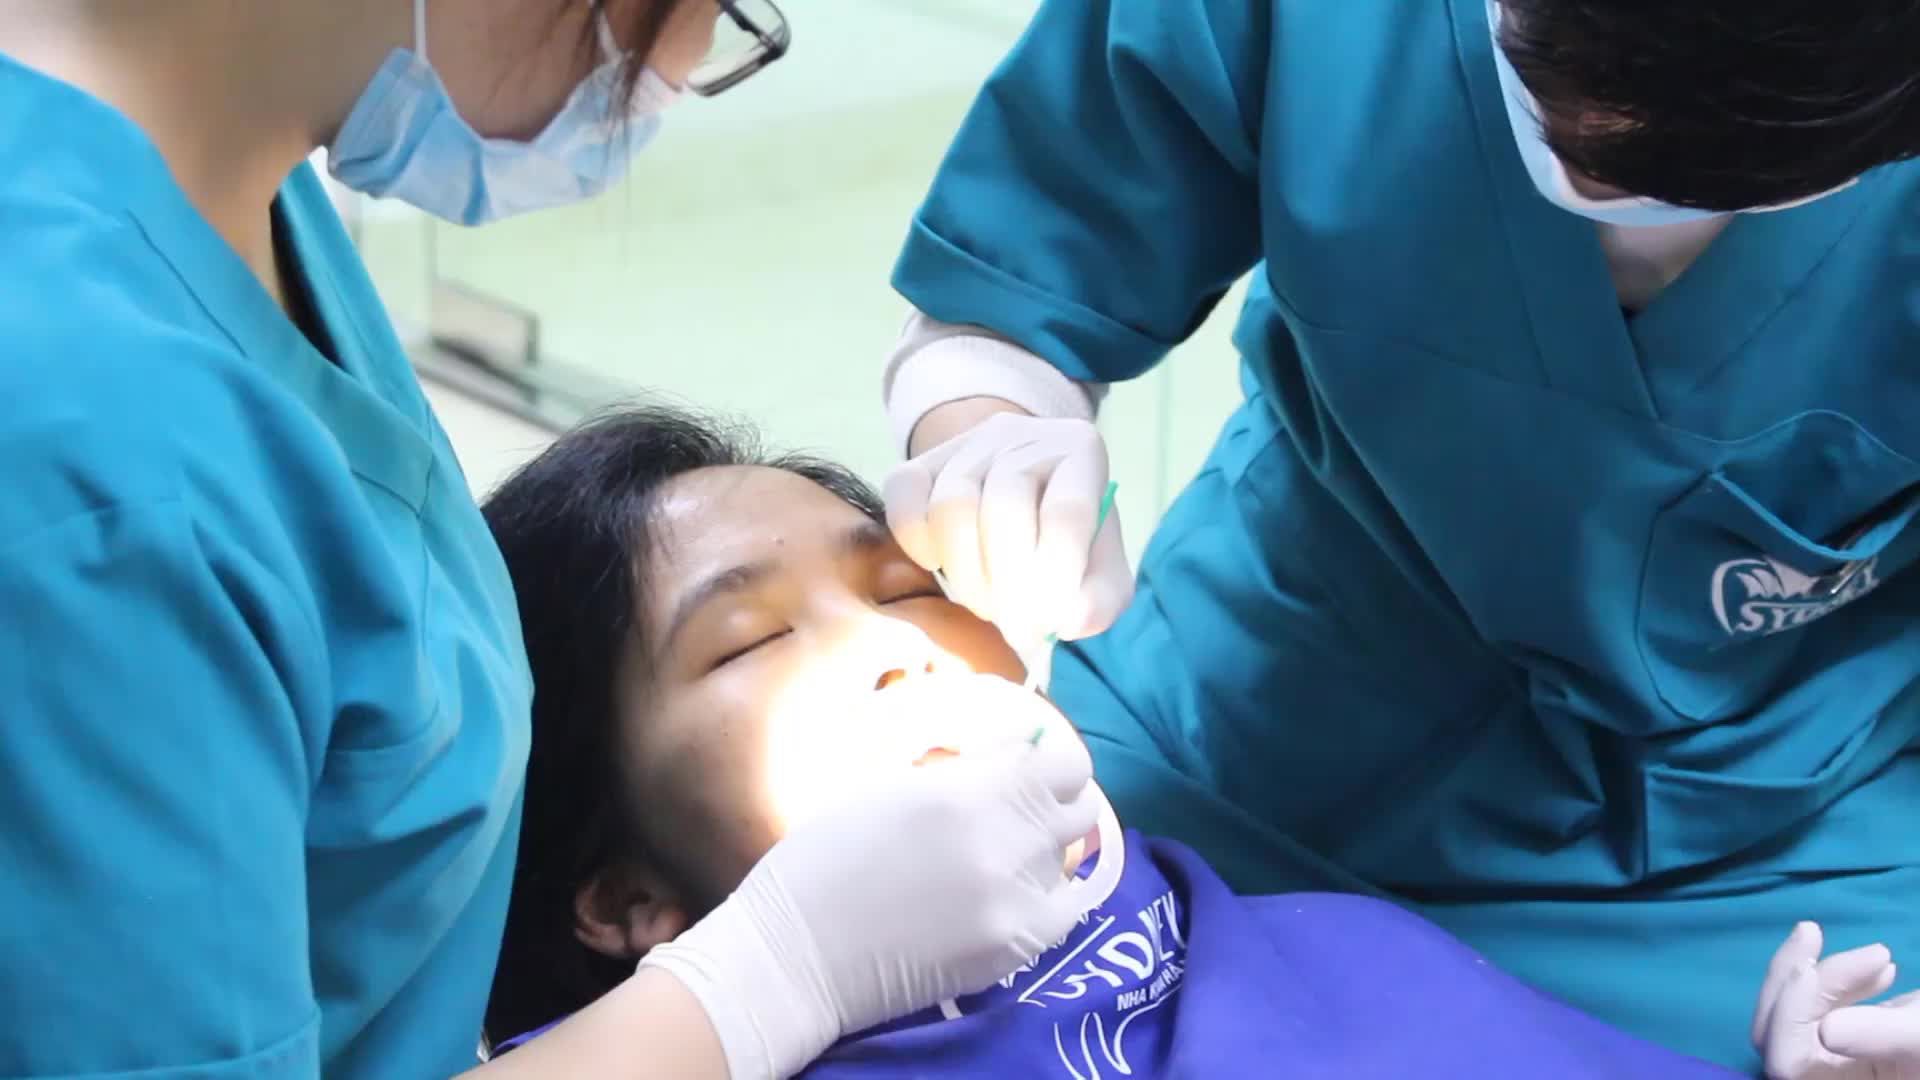 Case gắn mắc cài pha lê cho bệnh nhân T. M. A - 32 tuổi ở Bắc Ninh Người thực hiện: Thạc sĩ, bác sĩ Lê Thị Thùy Linh